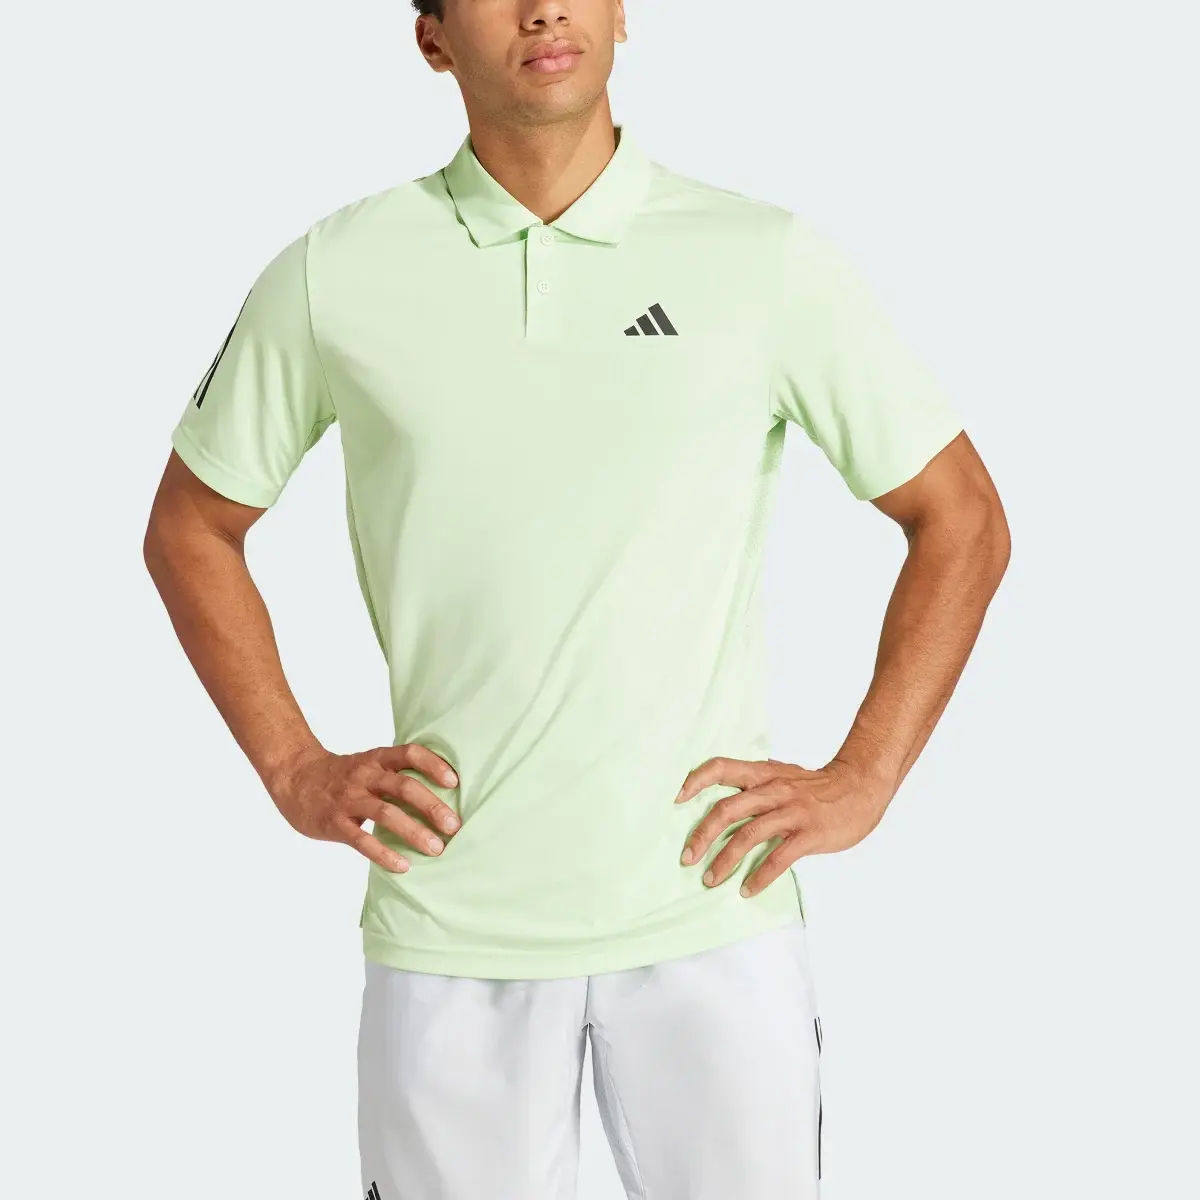 Adidas Club 3-Streifen Tennis Poloshirt. 1